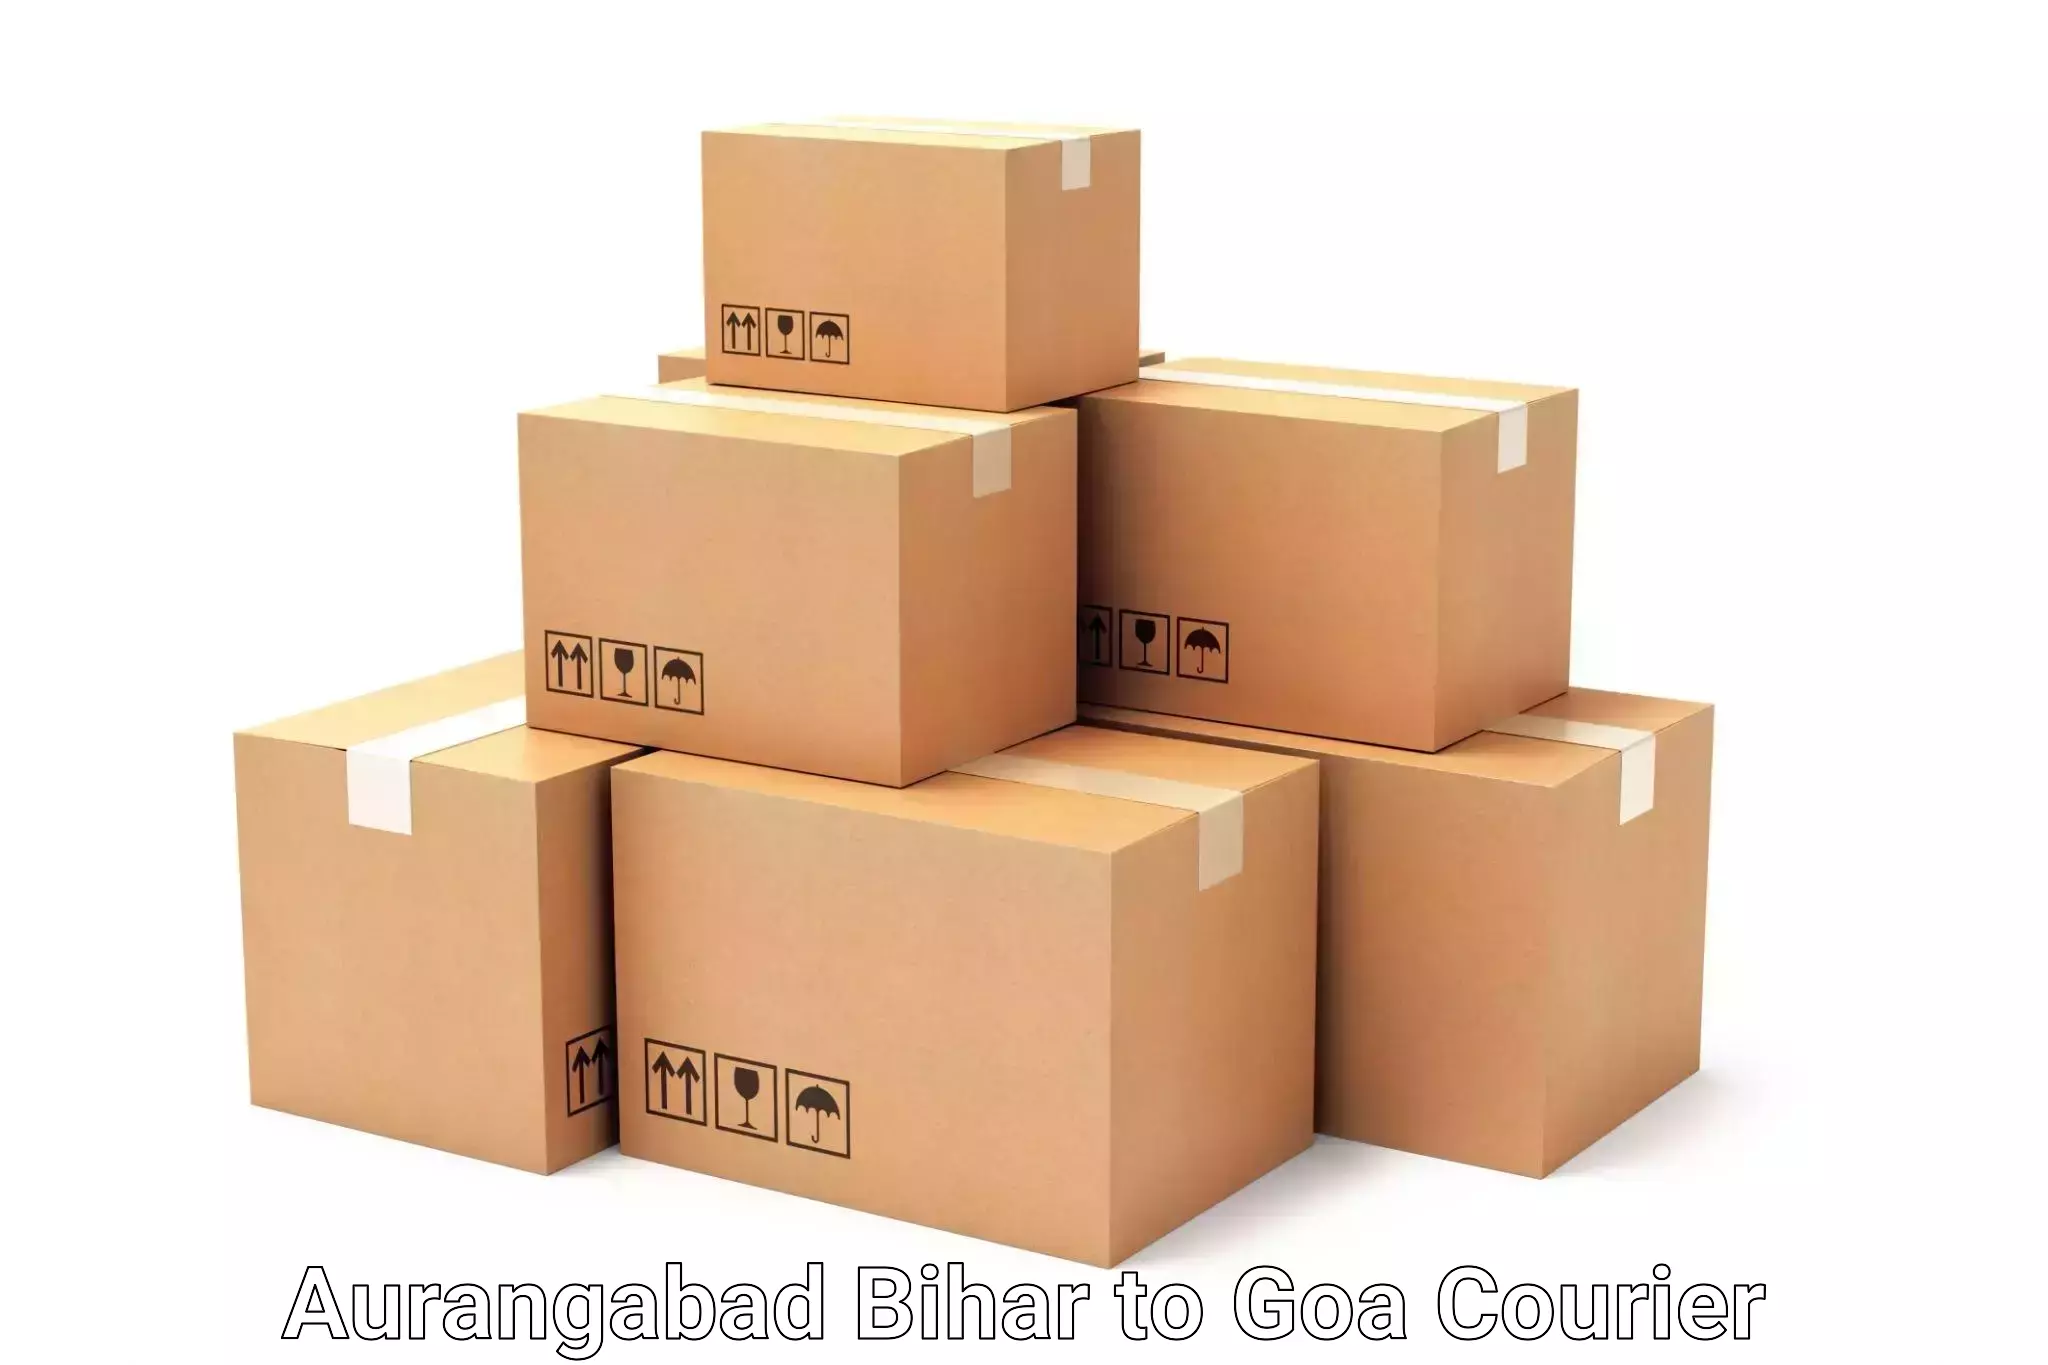 Luggage shipping management Aurangabad Bihar to Goa